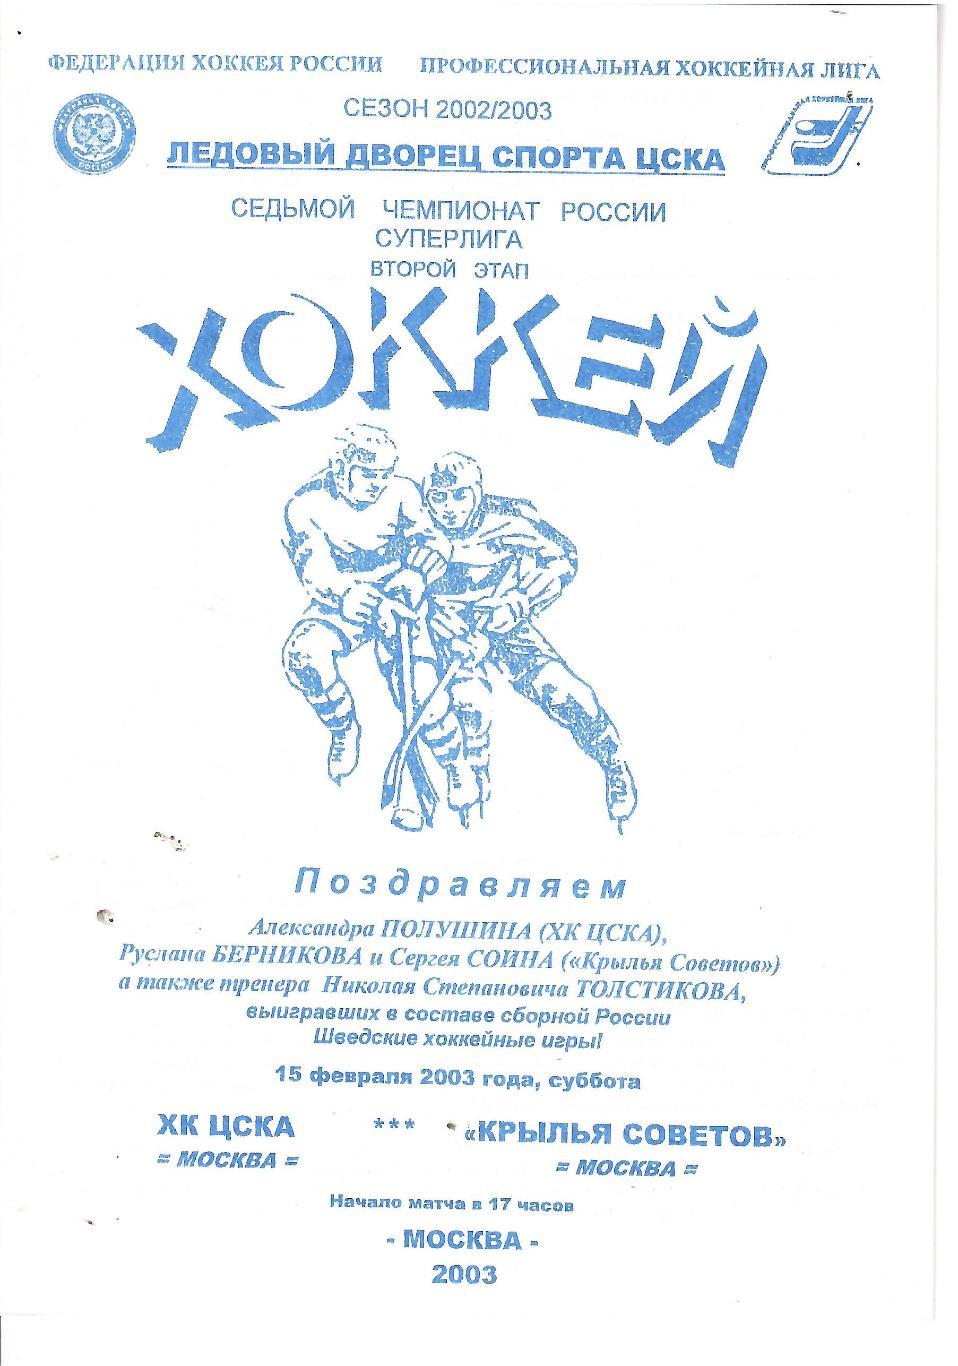 2003 Хоккей ЦСКА - Крылья Советов (09.04)